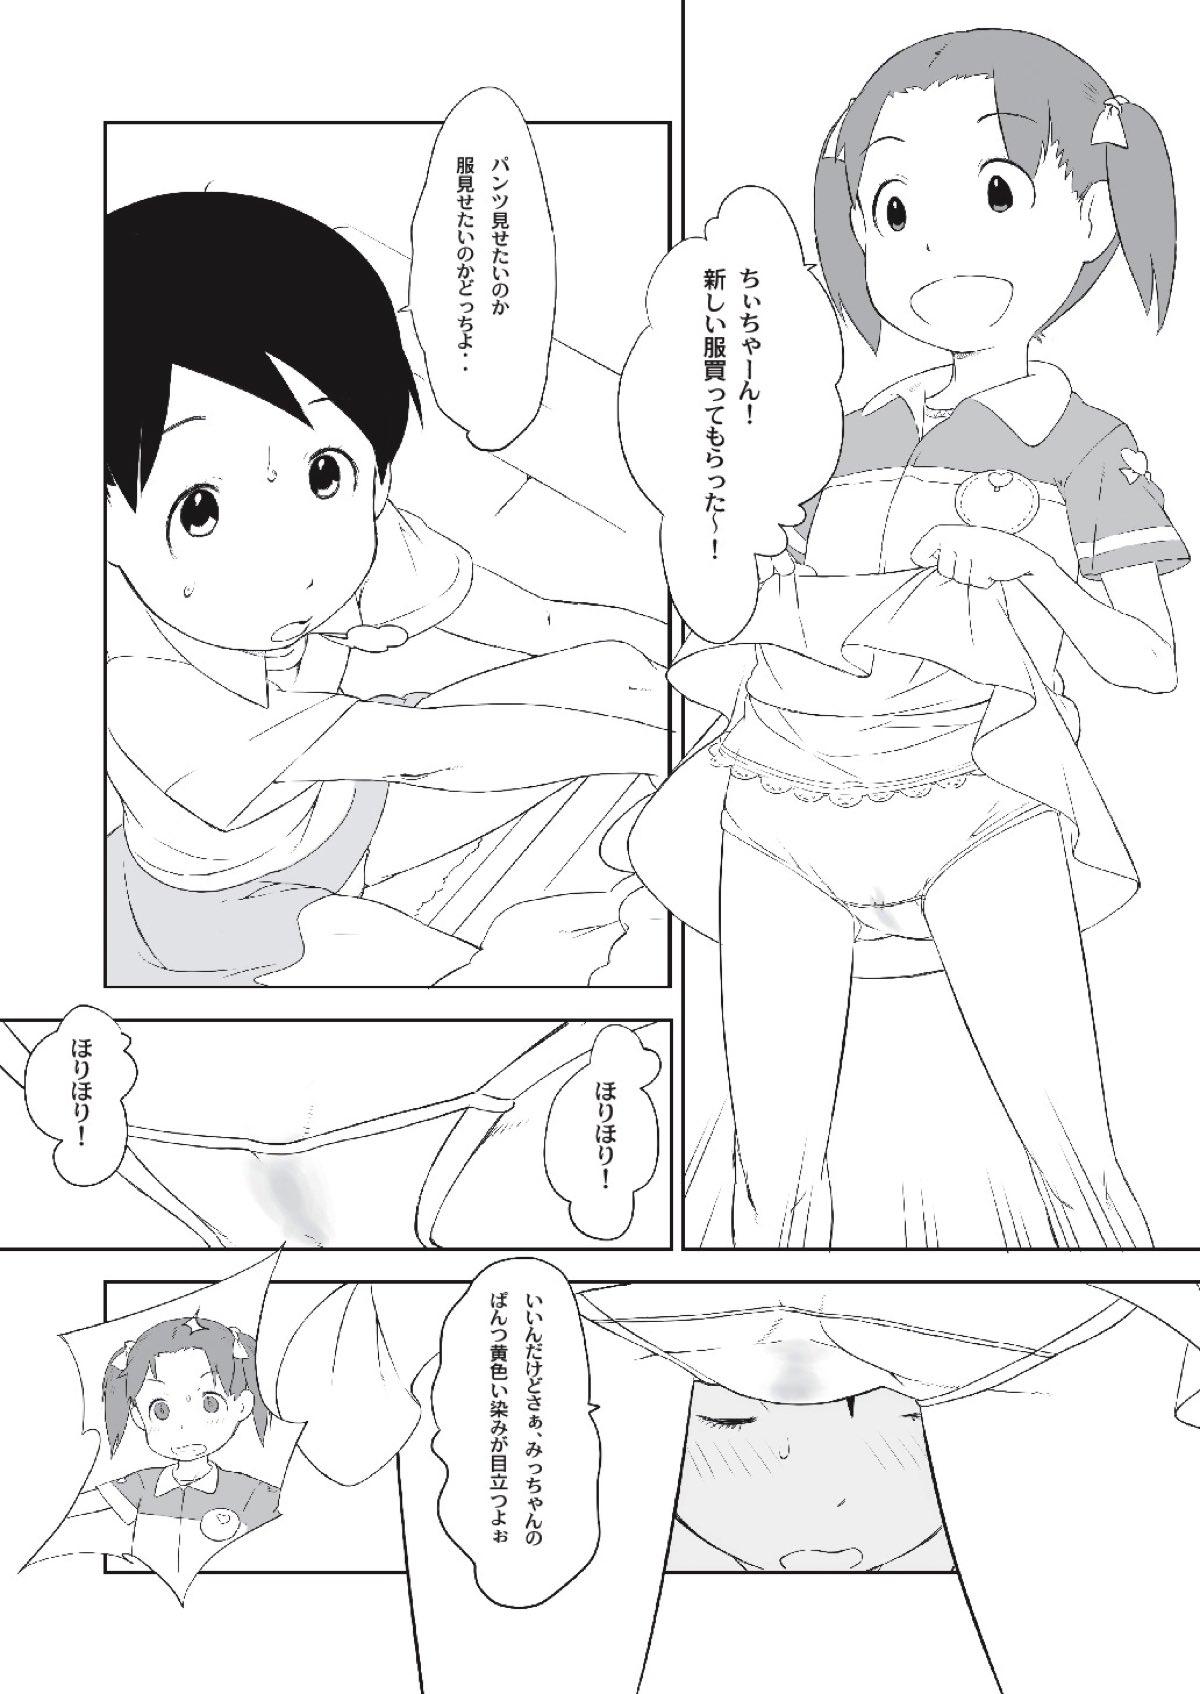 Dominatrix Chii-chan no Oshare Erabi - Ichigo mashimaro Porno 18 - Page 5